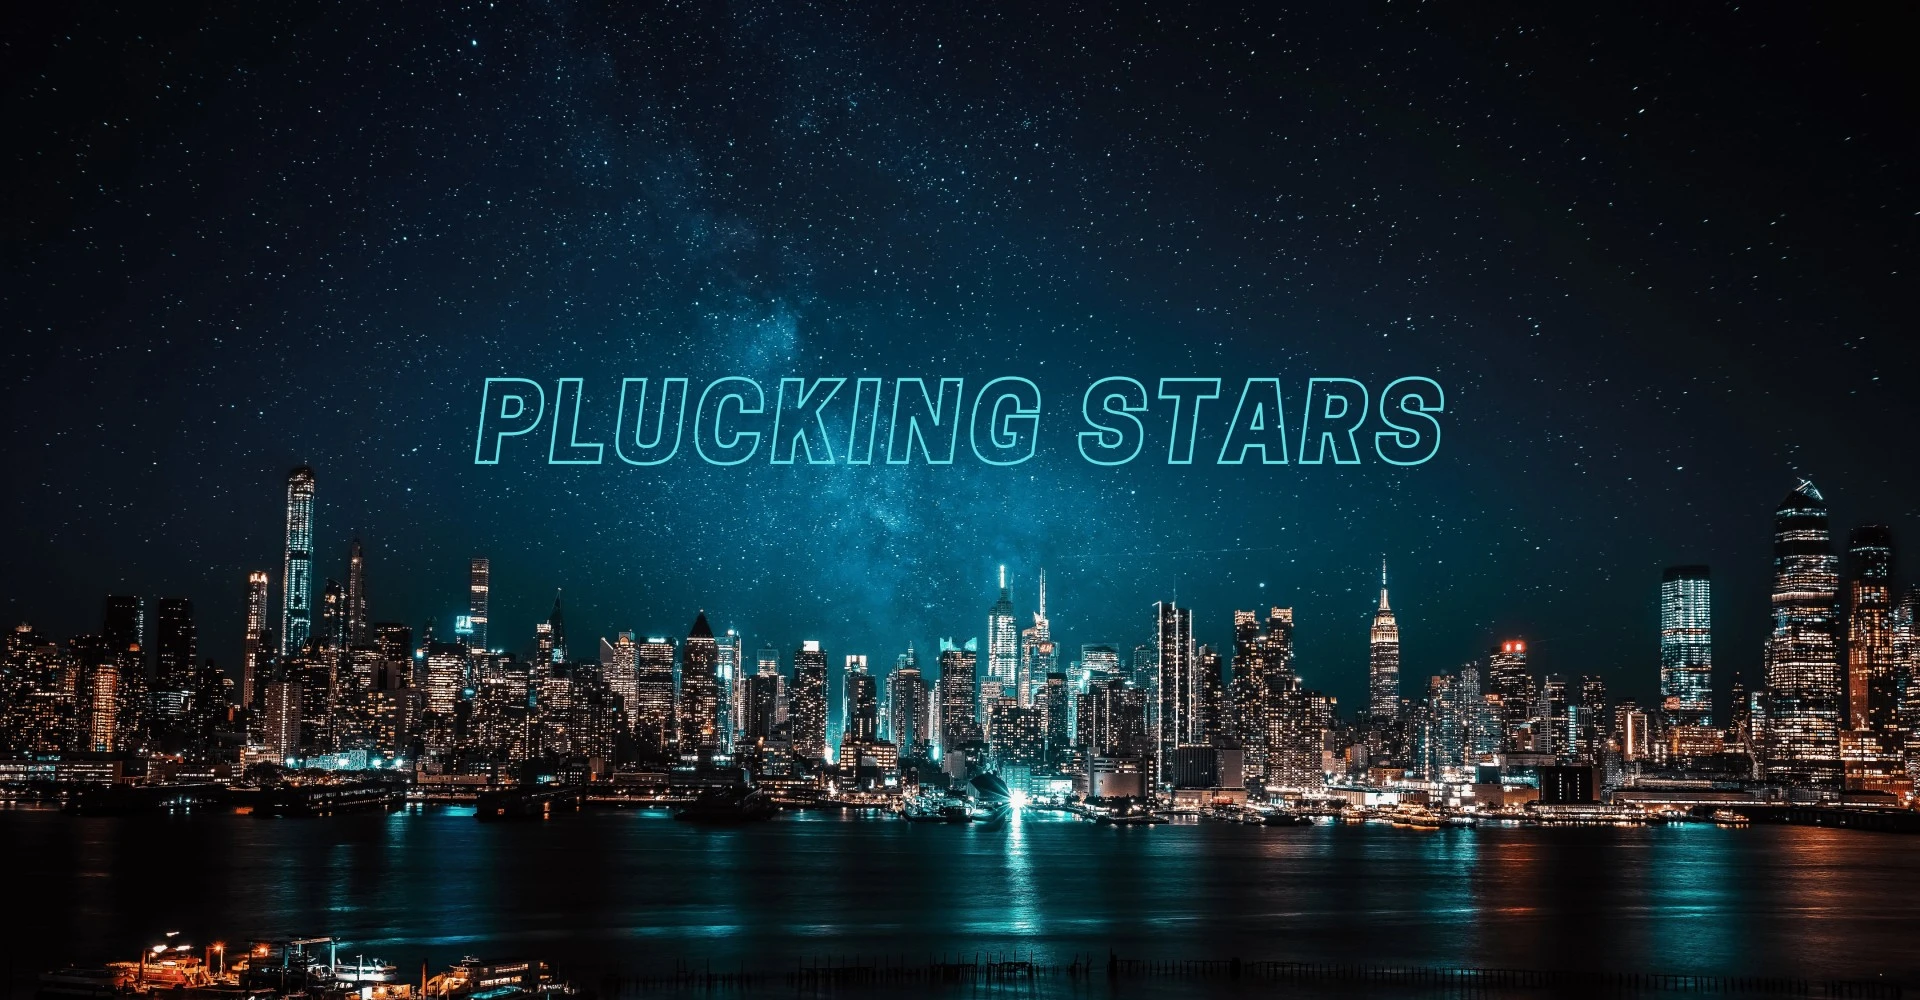 Plucking Stars main image